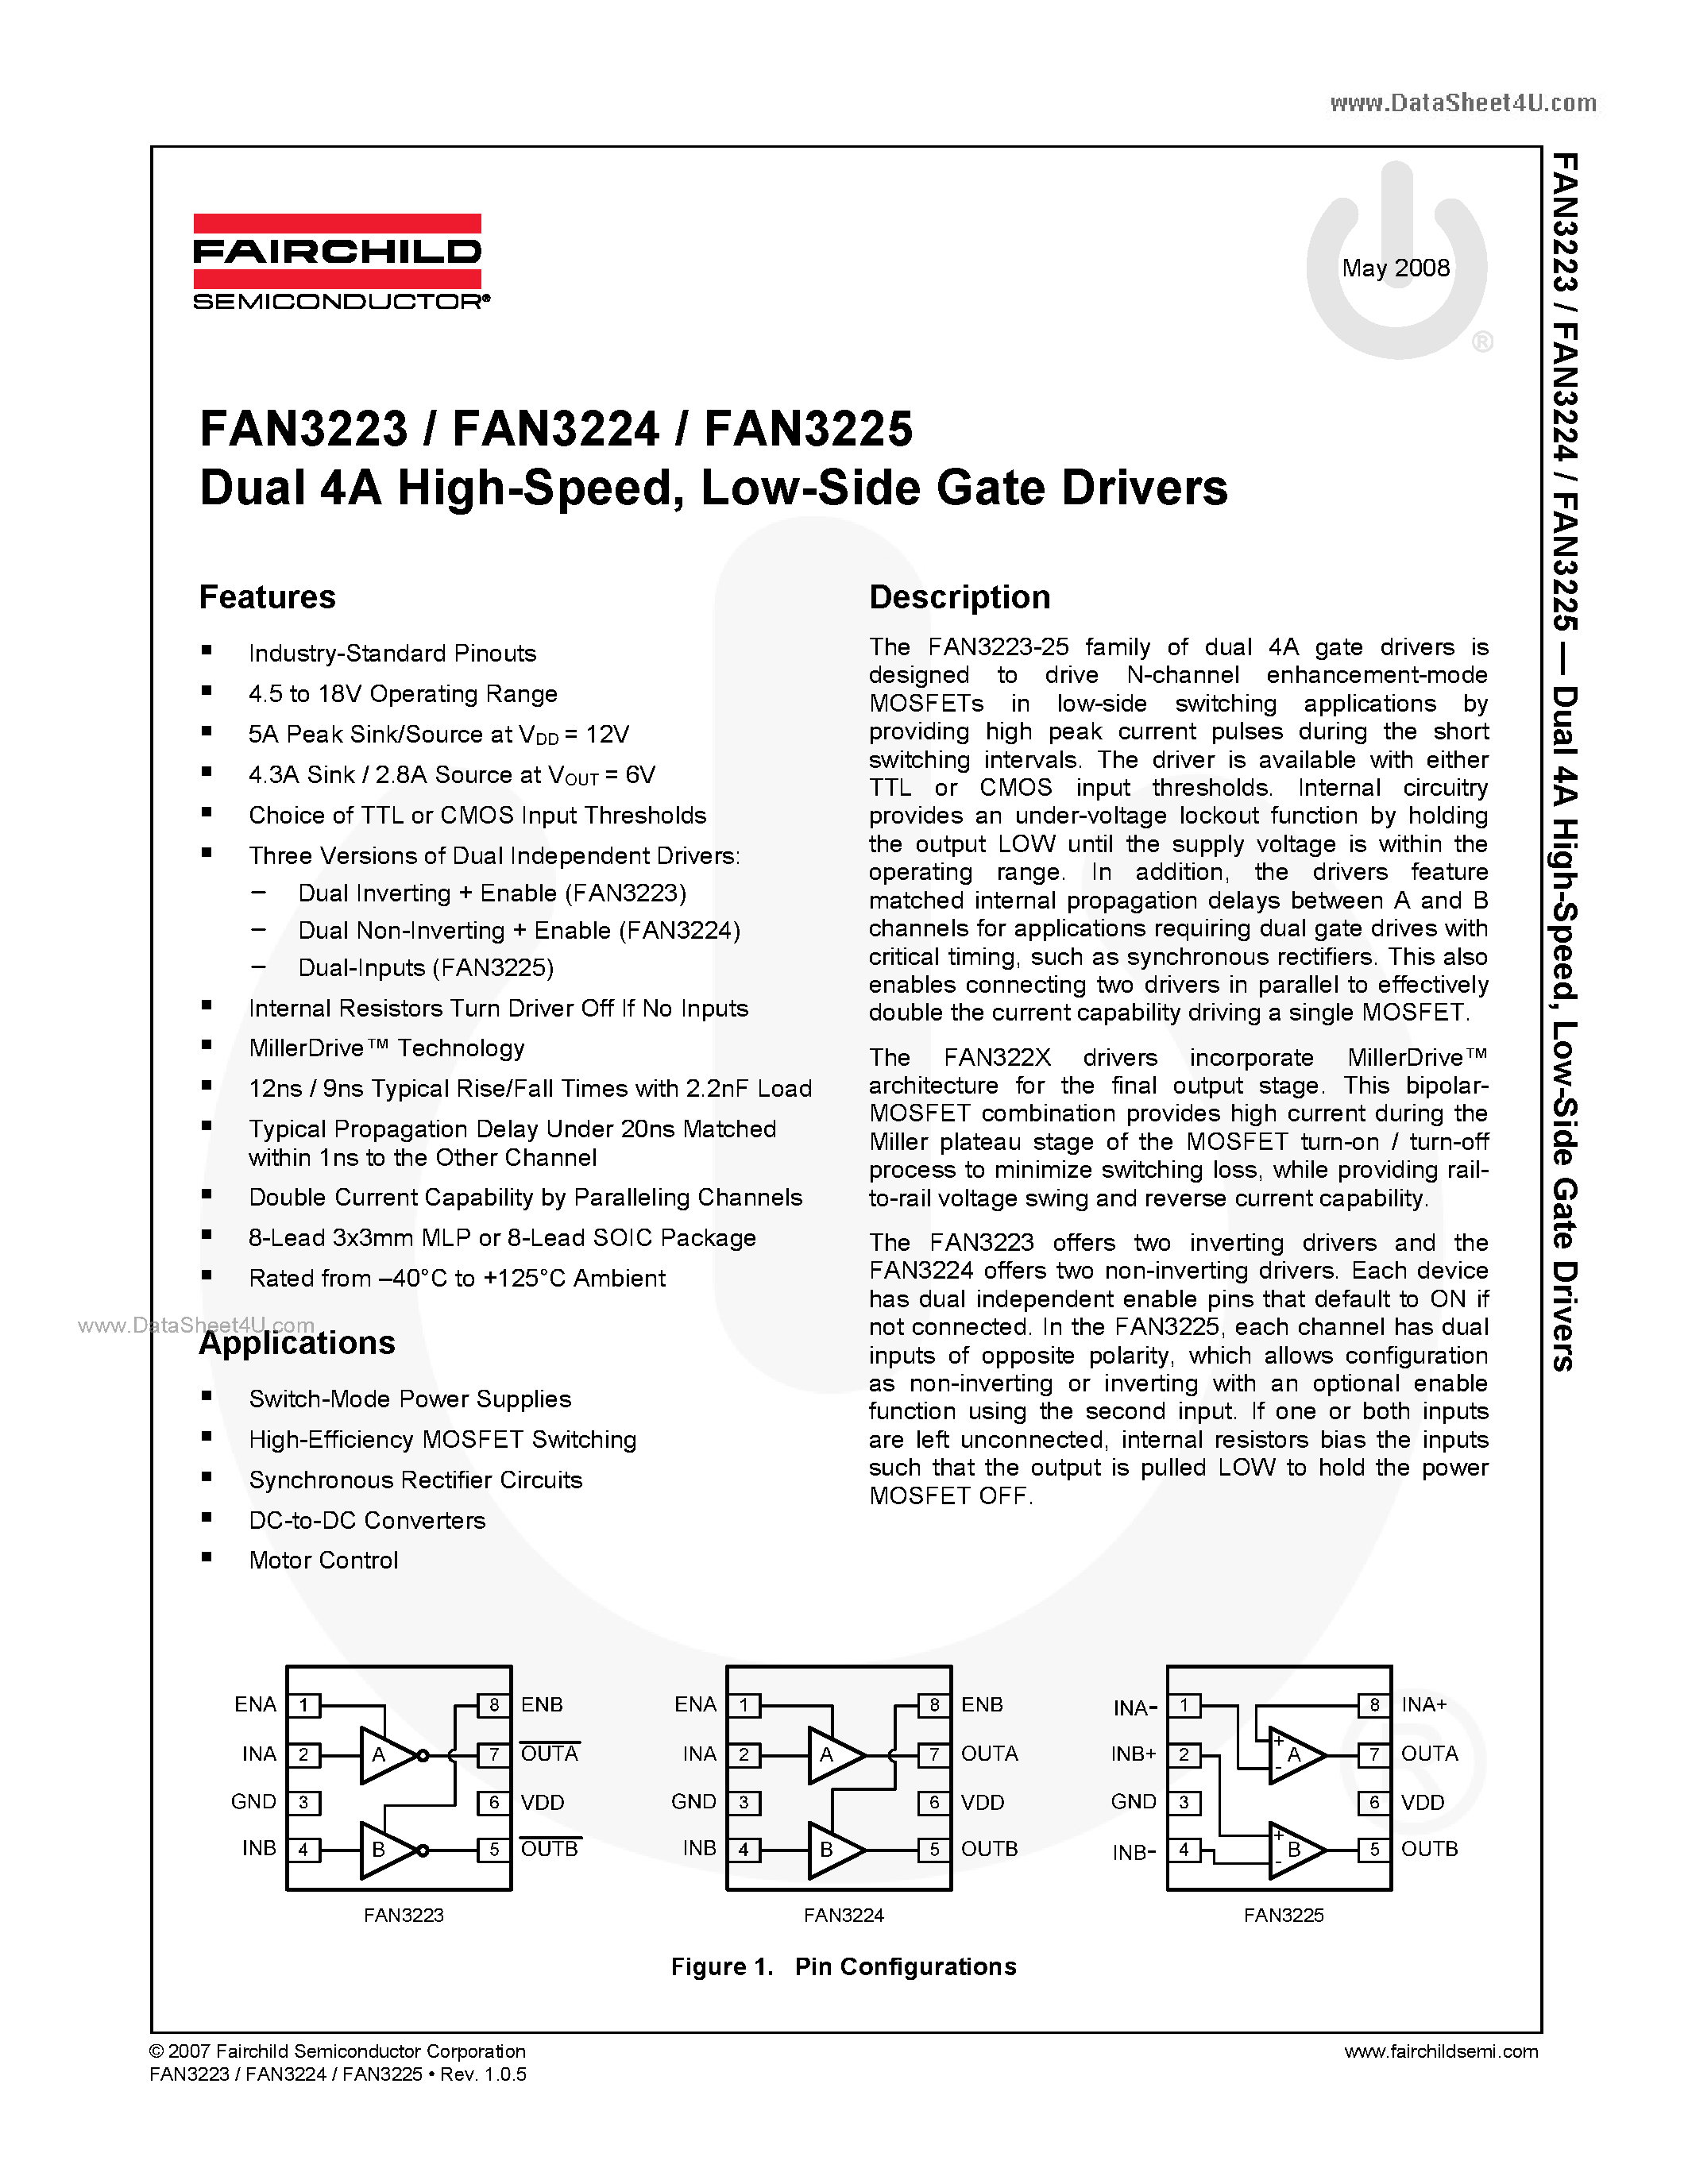 Datasheet FAN3223 - (FAN3223 - FAN3225) Low-Side Gate Drivers page 1